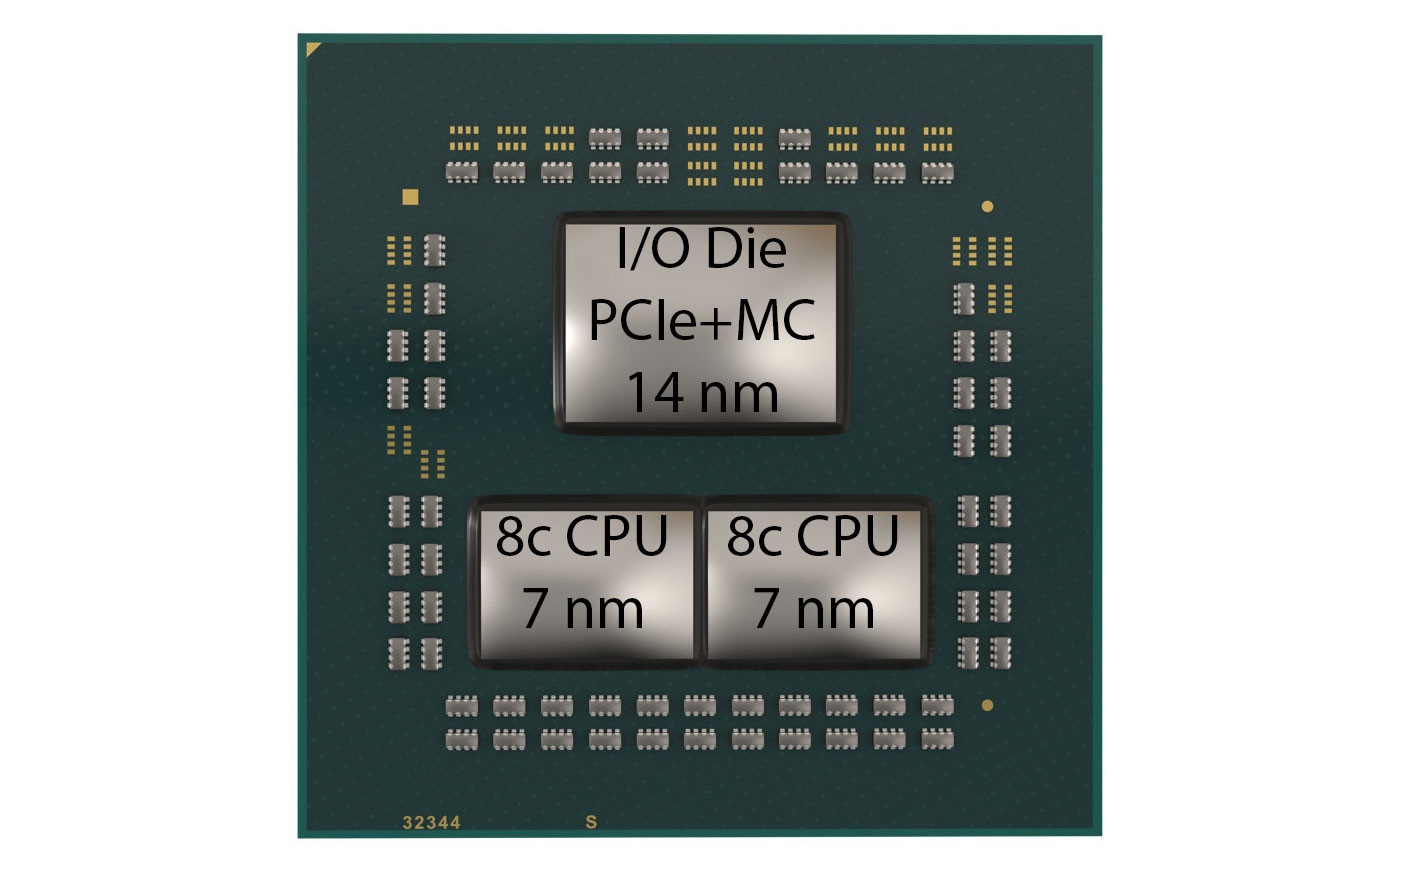  процессор AMD Ryzen, Zen 2, многочиповый модуль MCM 